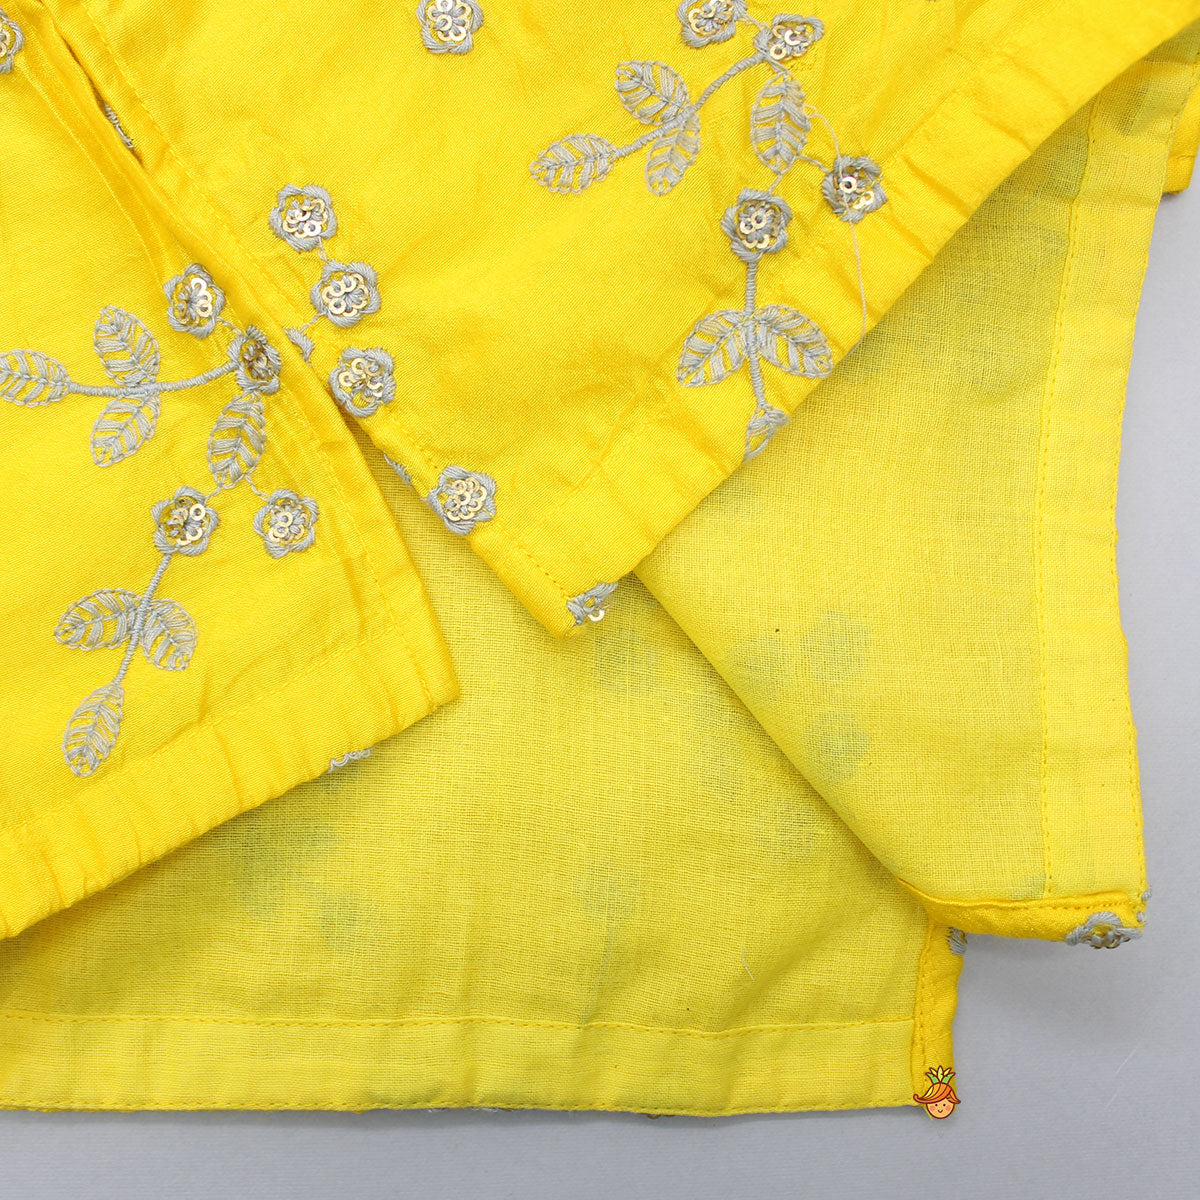 Yellow Embroidered Kurta And White Dhoti